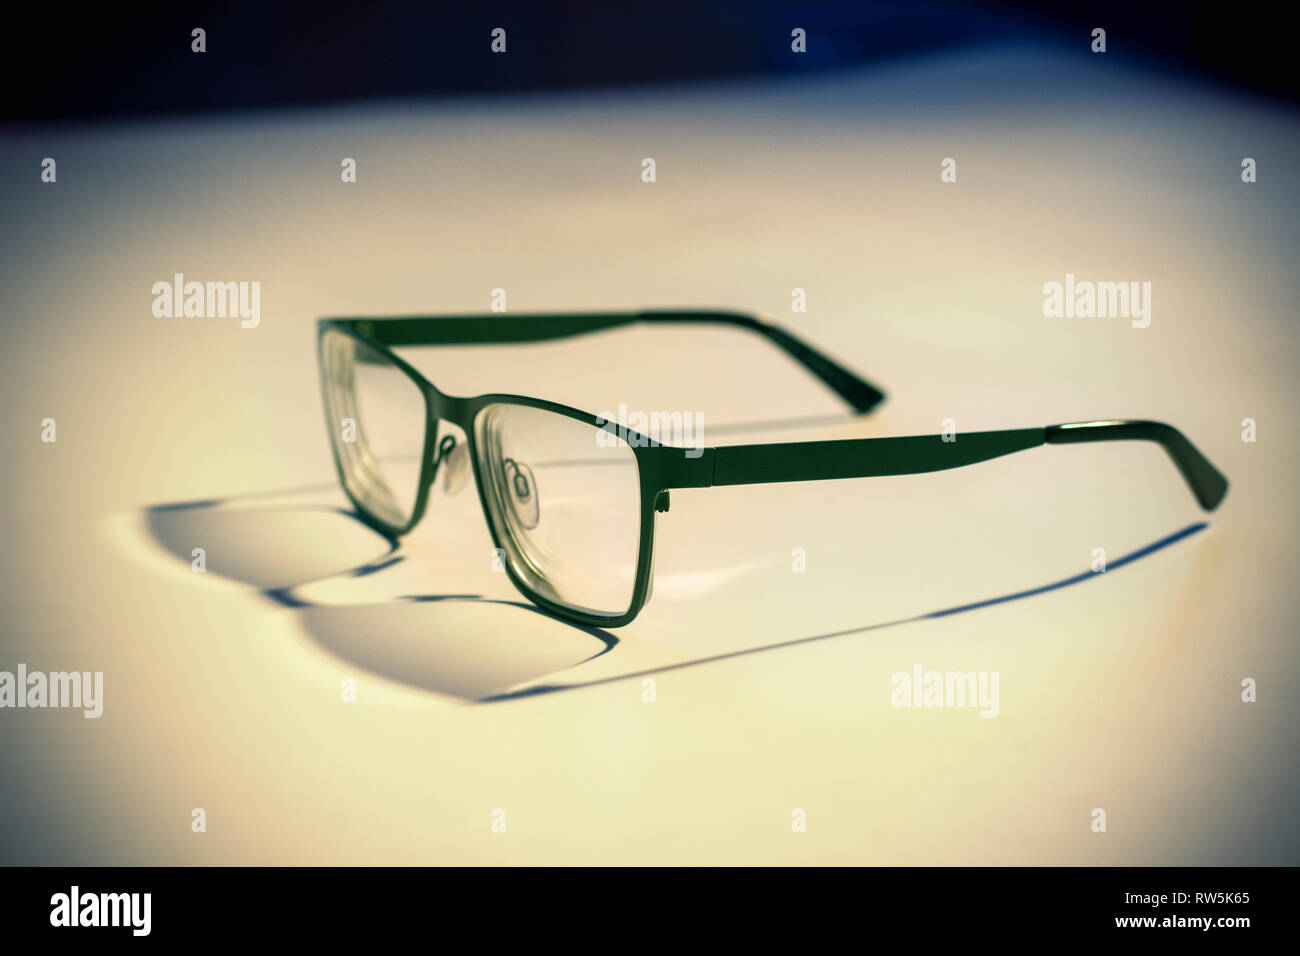 Green framed glasses Stock Photo